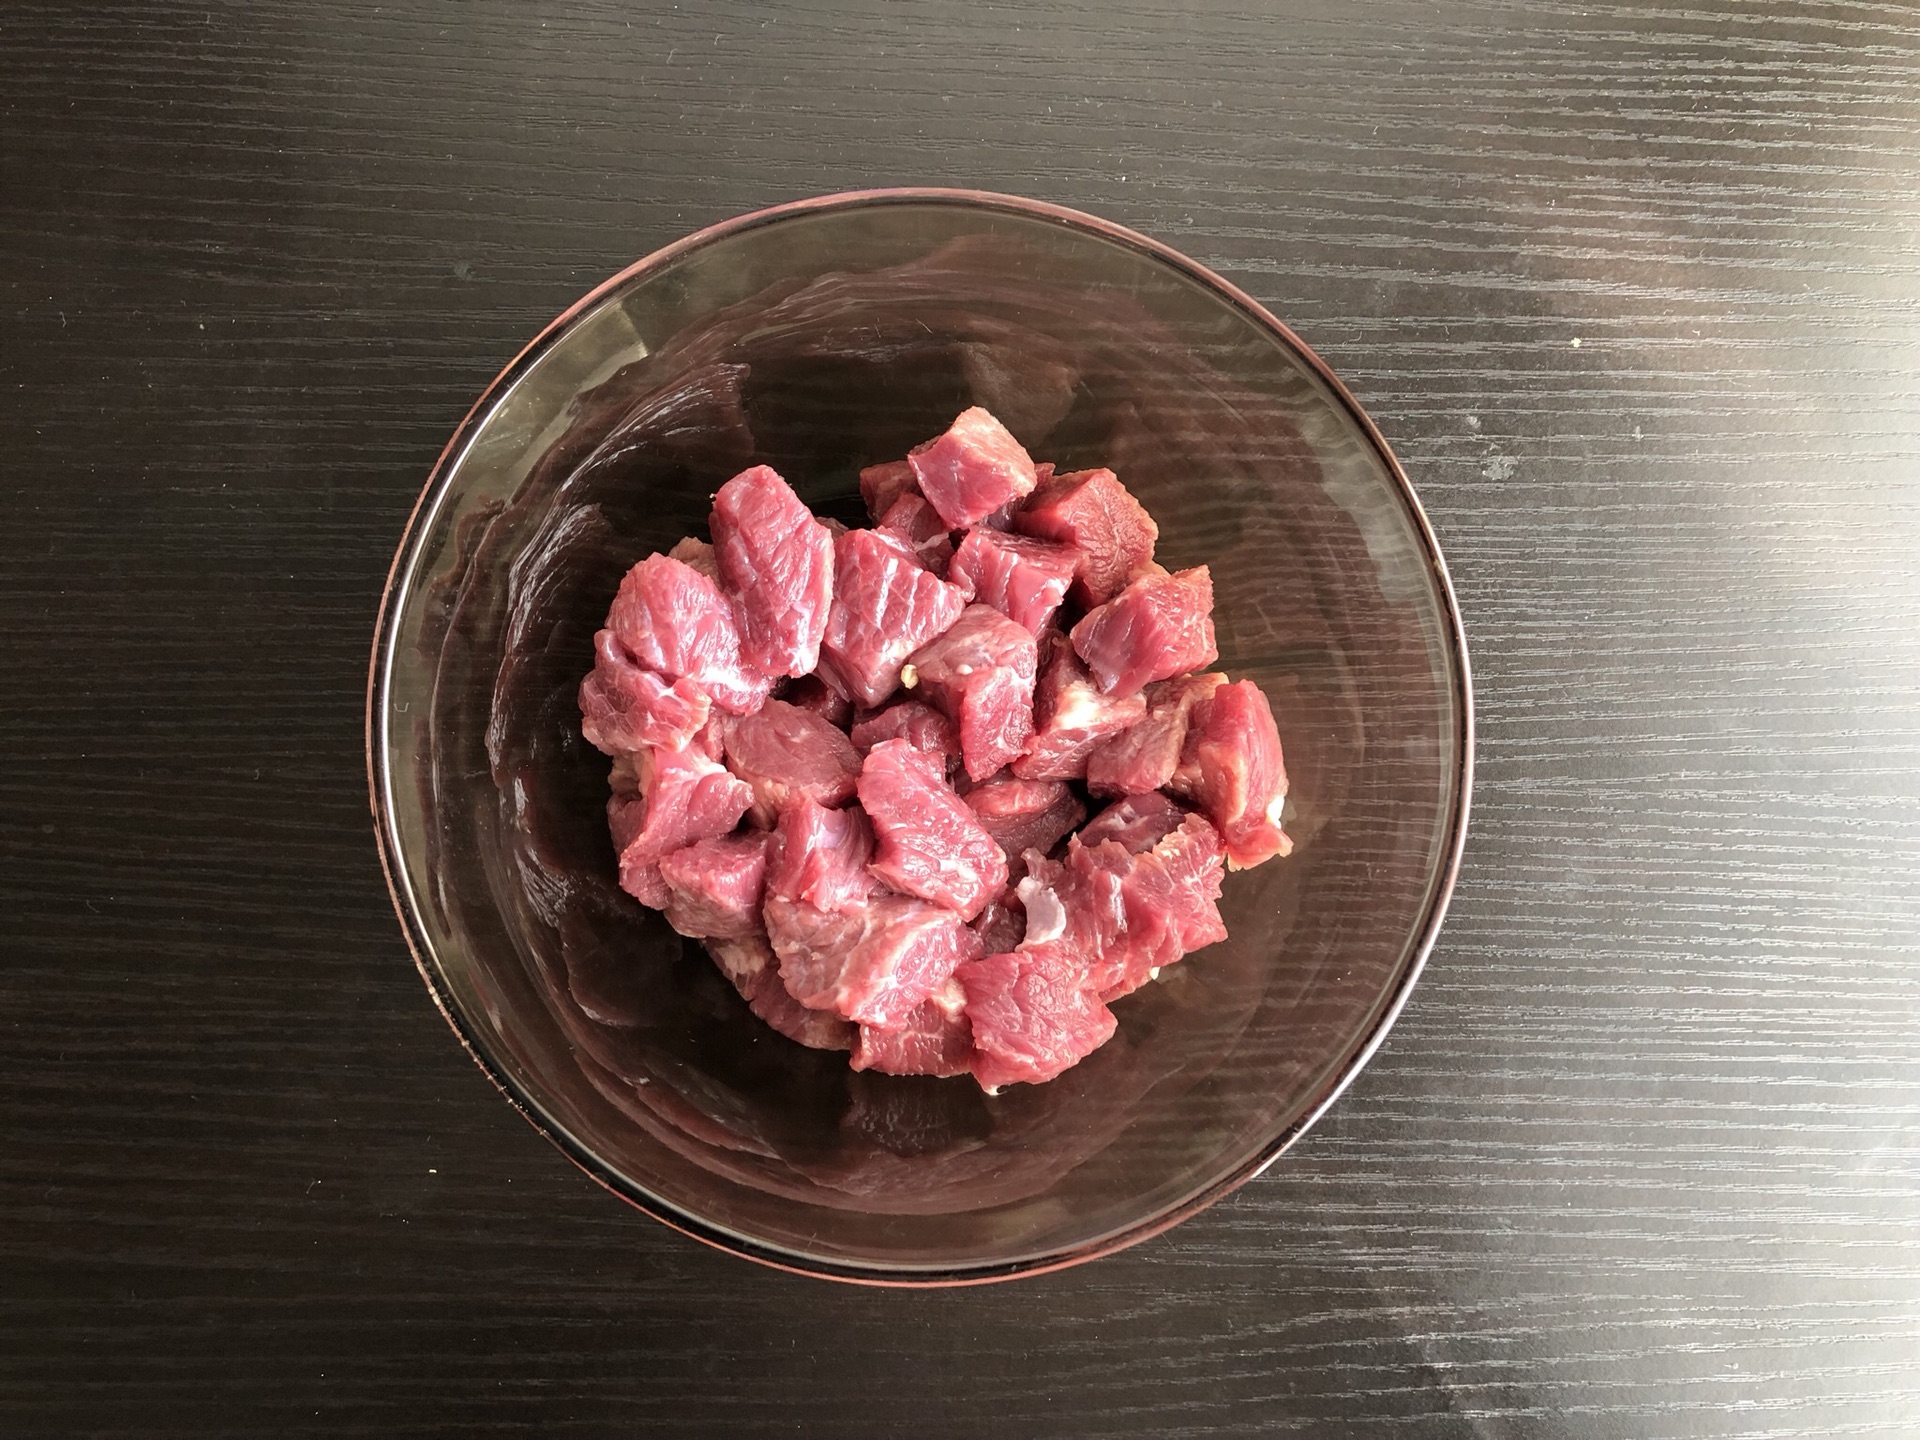 2 món ngon từ thịt bò và thịt gà vừa dễ làm lại ngon miệng giúp bạn nhàn tênh khi làm cơm Tết đãi khách-2